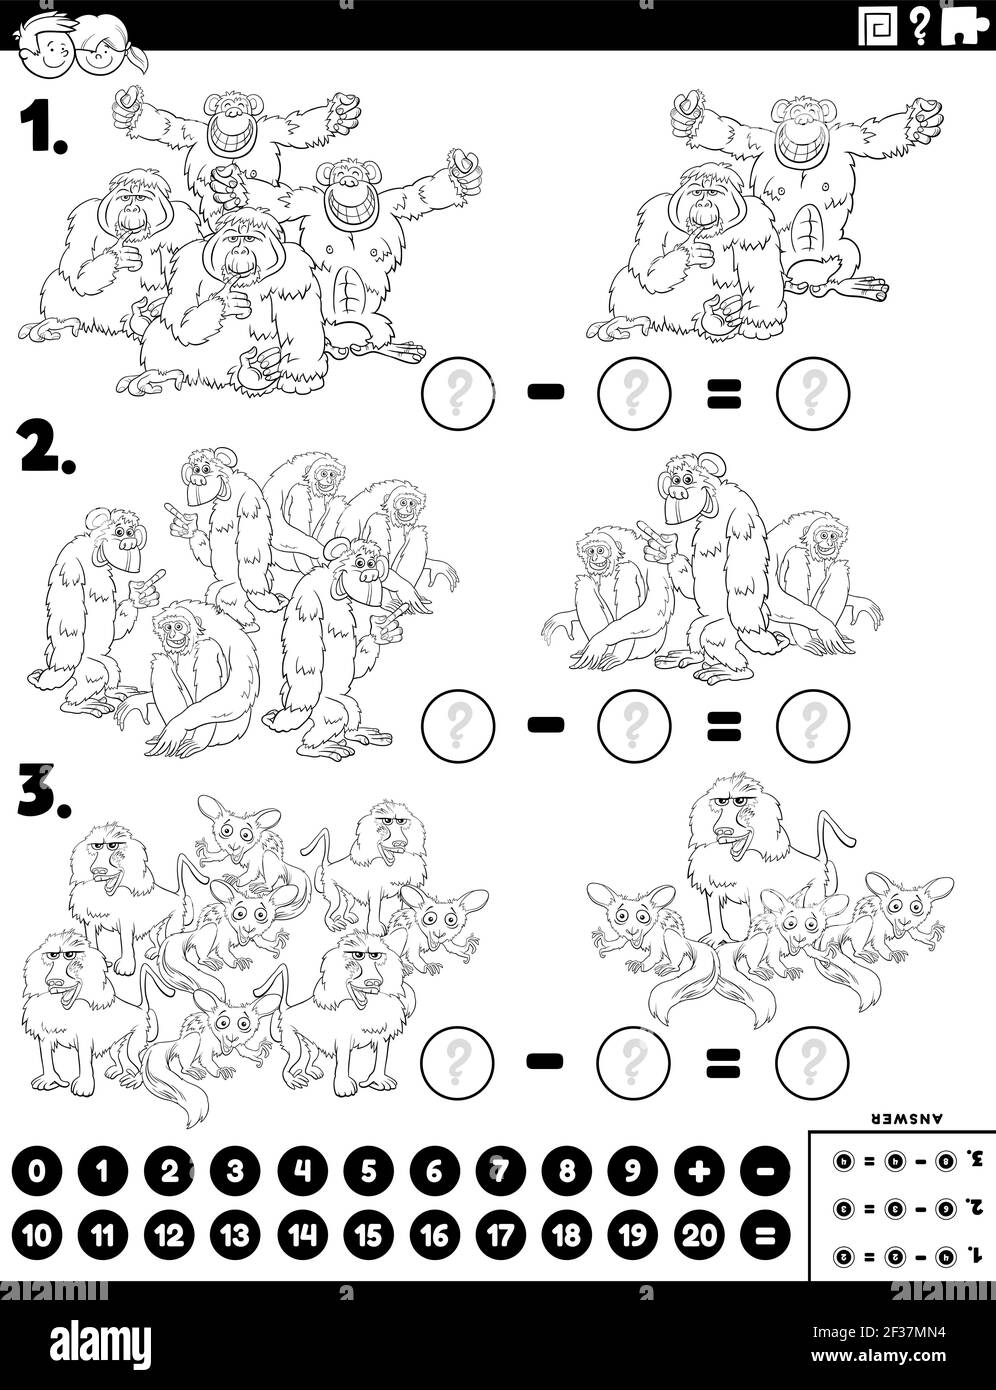 Dibujo de dibujos animados en blanco y negro del rompecabezas de la resta matemática educativa tarea para los niños con simios y monos personajes de animales colorear Imagen Vector de stock -